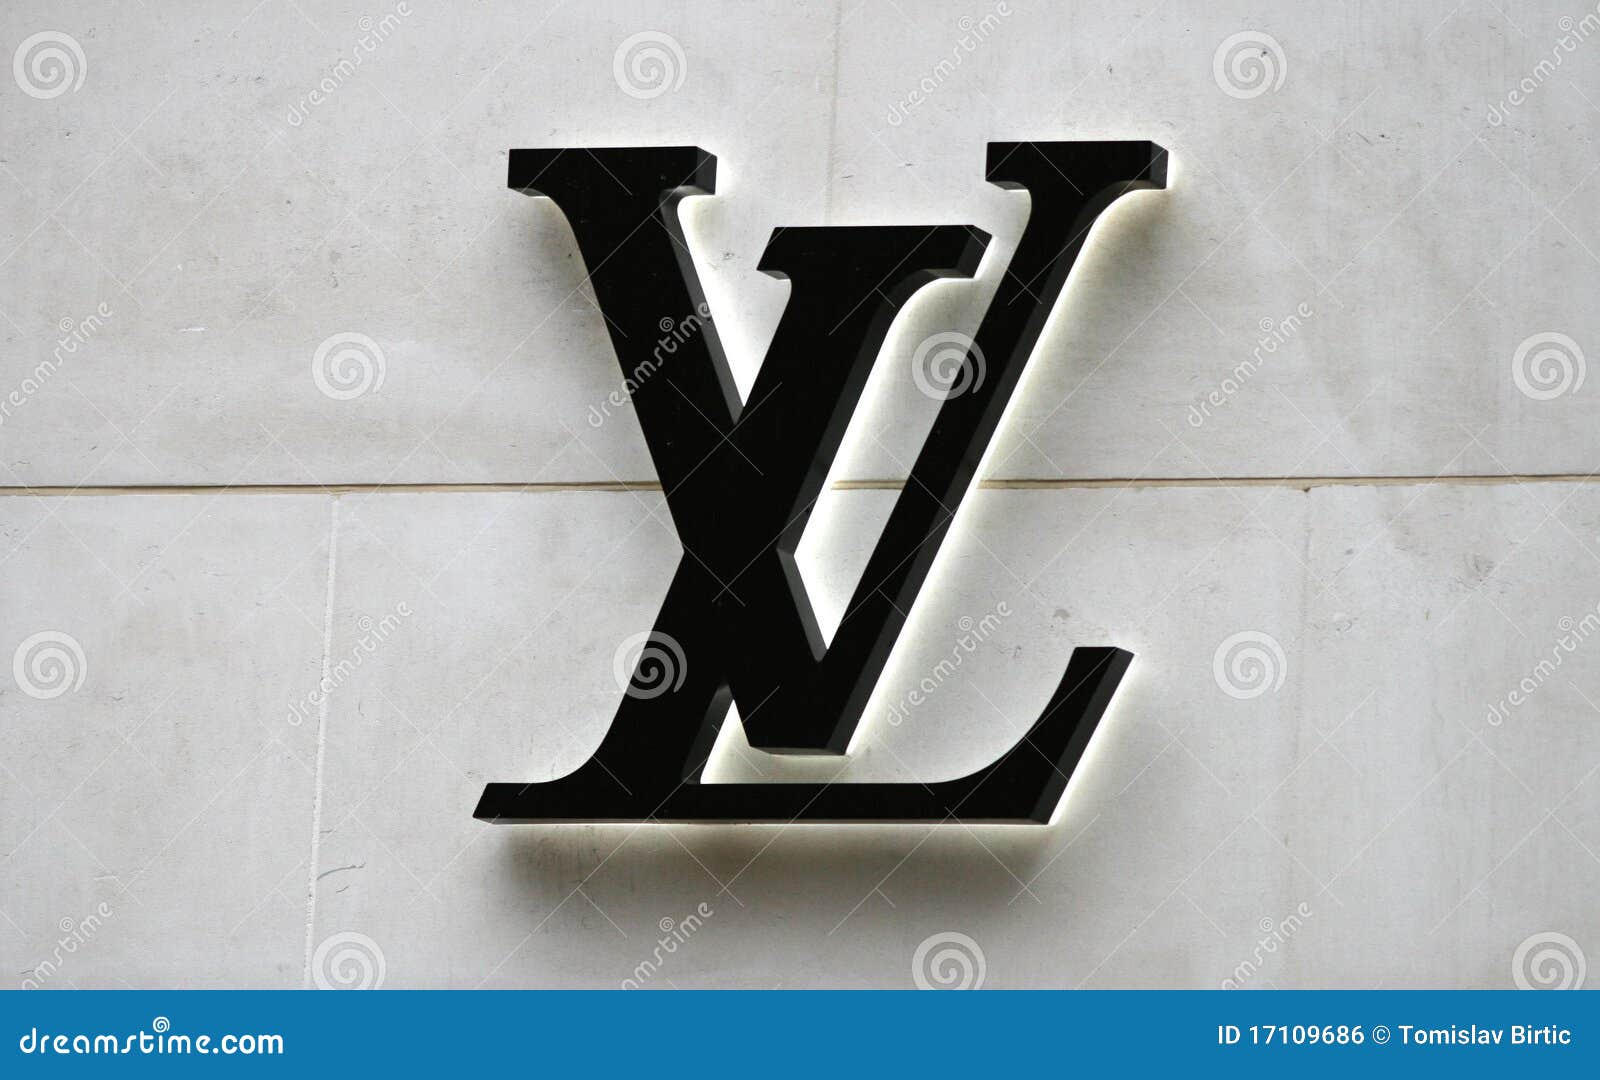 Vinnytsia, Ukraine - October 11, 2021: Monogram pattern in striking  geometric shapes from Louis vuitton. Vector illustration EPS10 Stock Vector  Image & Art - Alamy